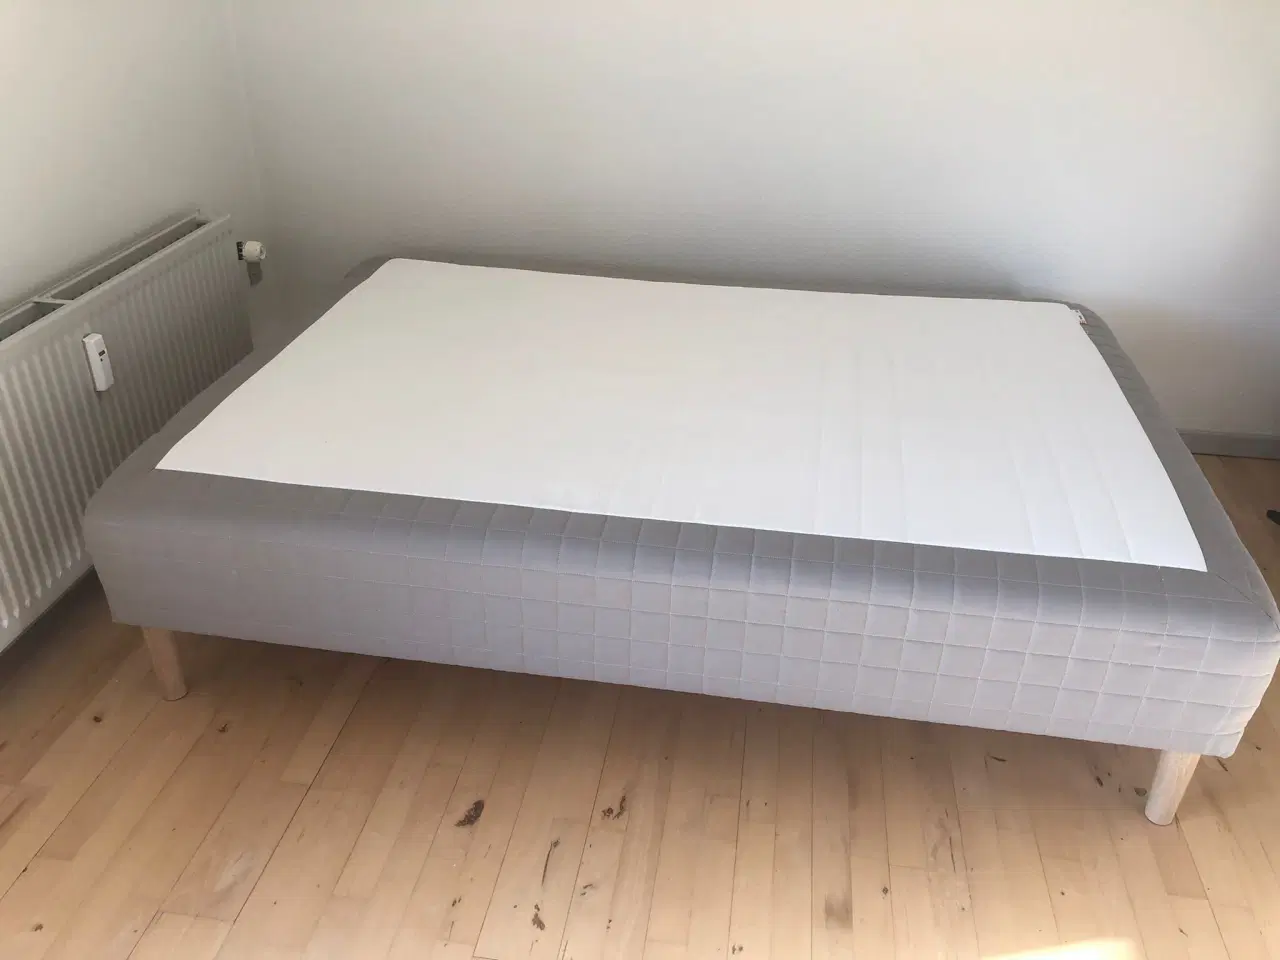 Billede 1 - Bed. Box mattress 140*200 with 5 legs